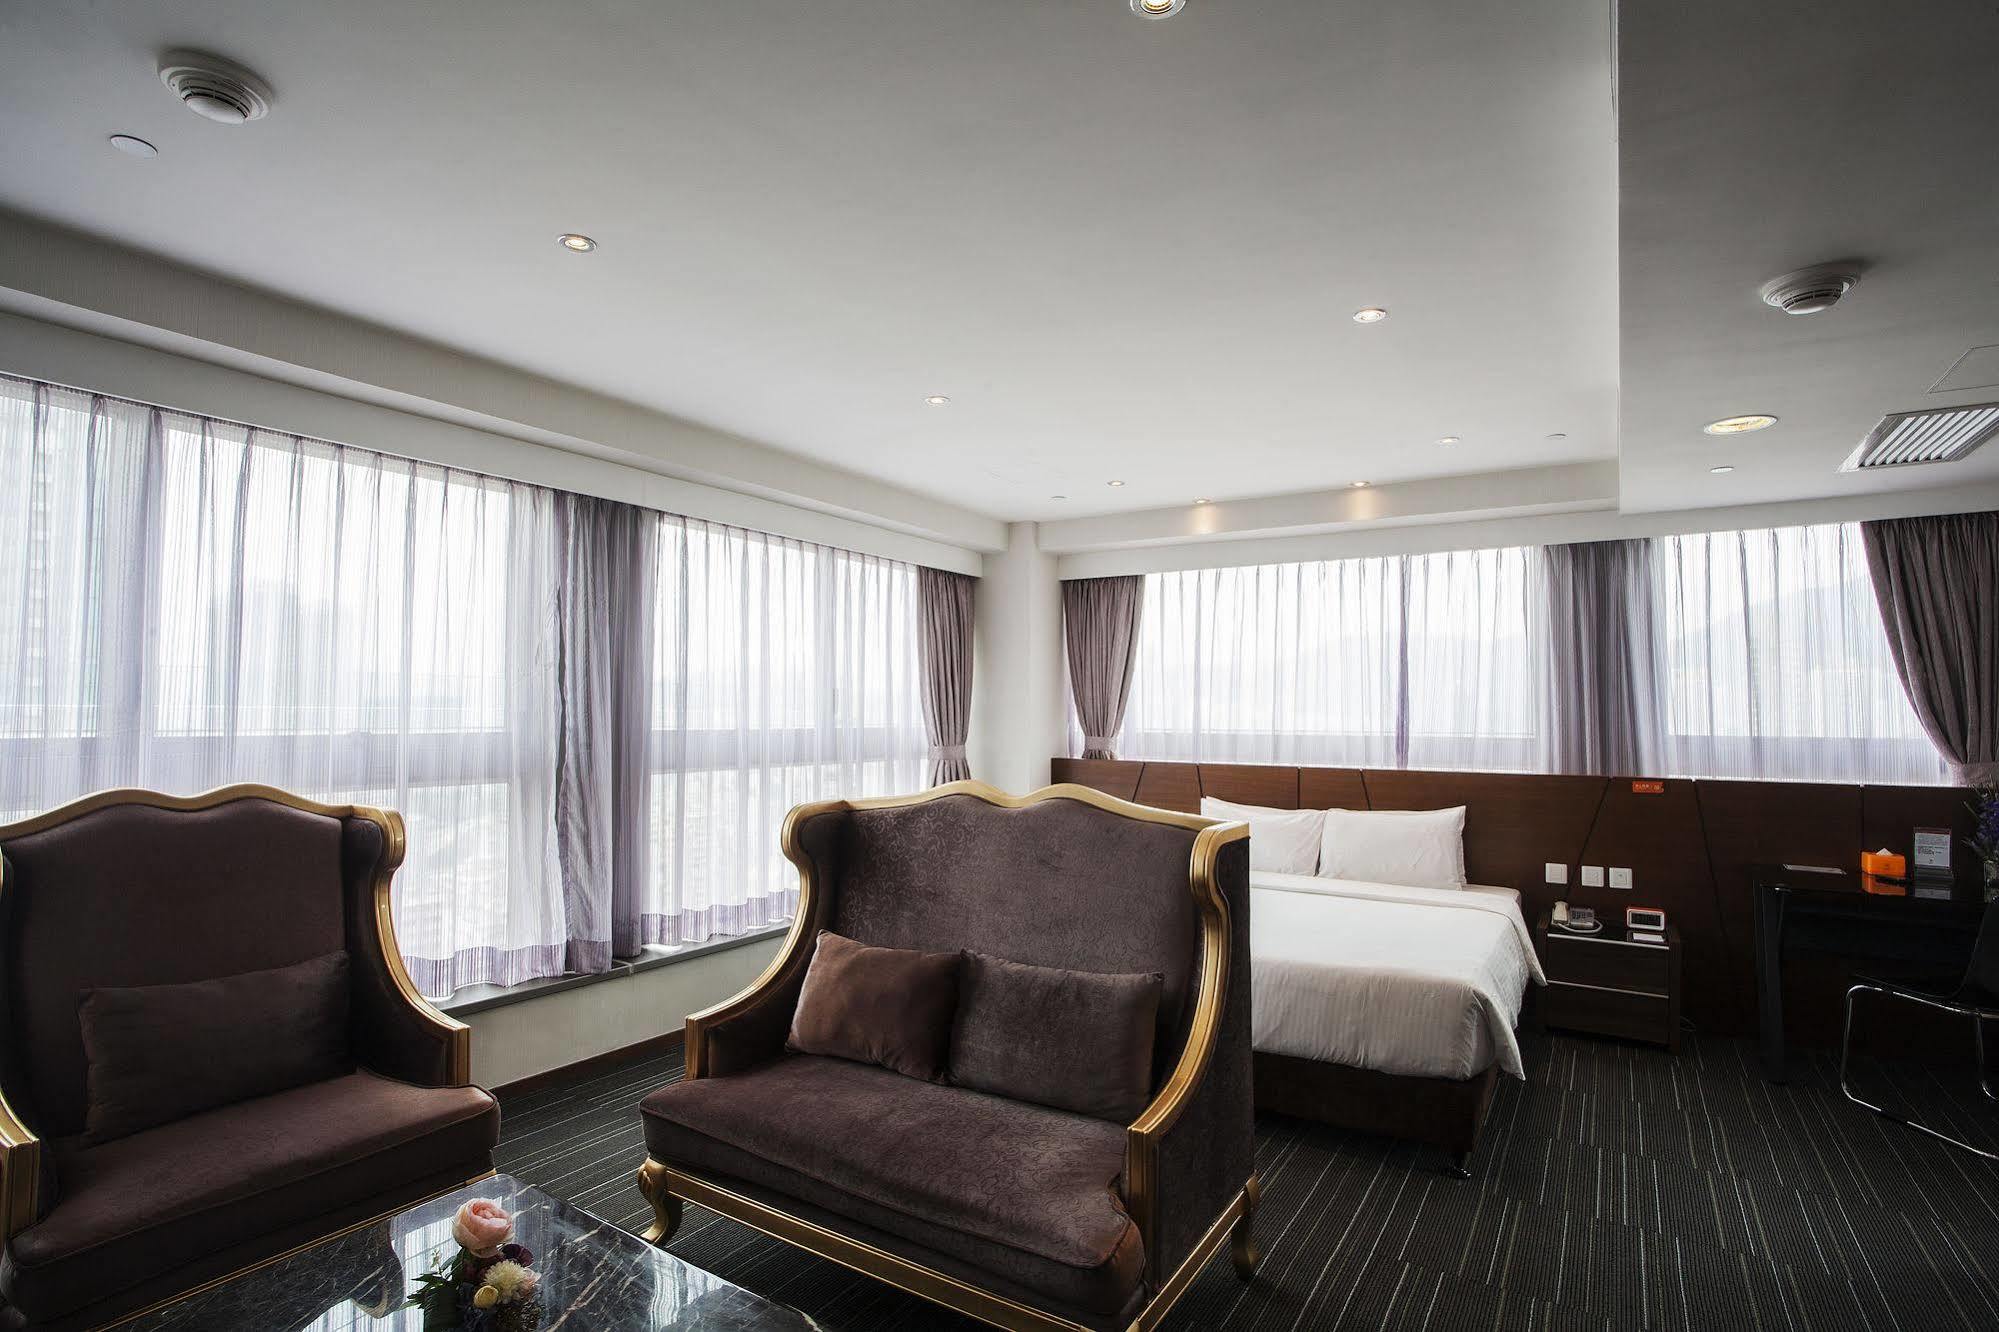 Le Prabelle Hotel Hongkong Eksteriør bilde